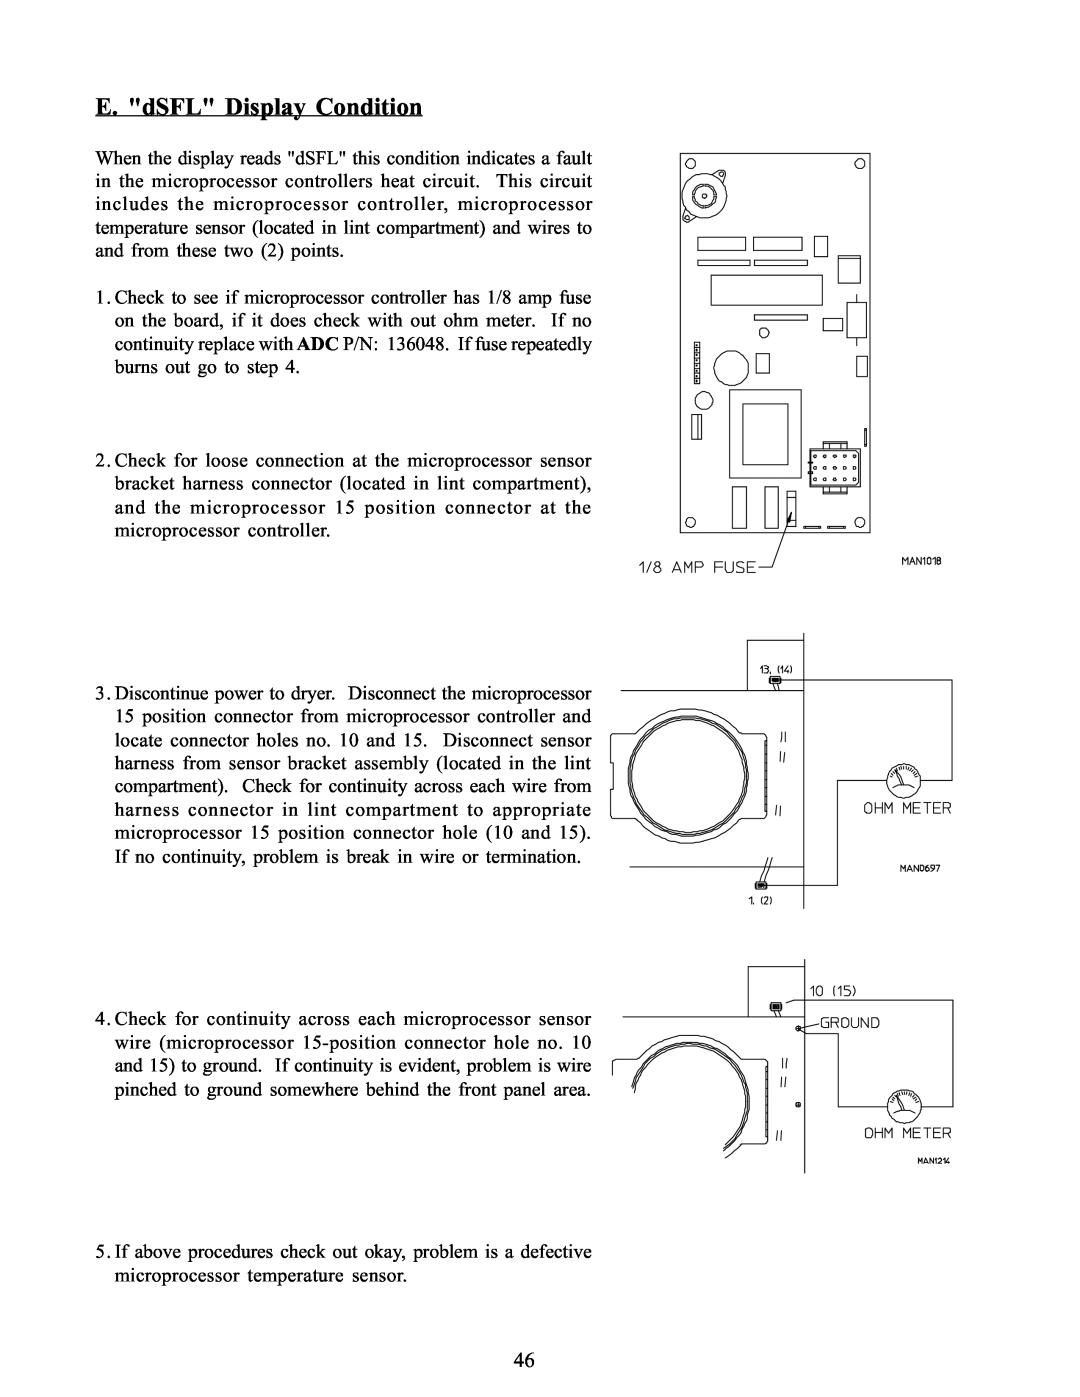 American Dryer Corp WDA-385 service manual E. dSFL Display Condition 